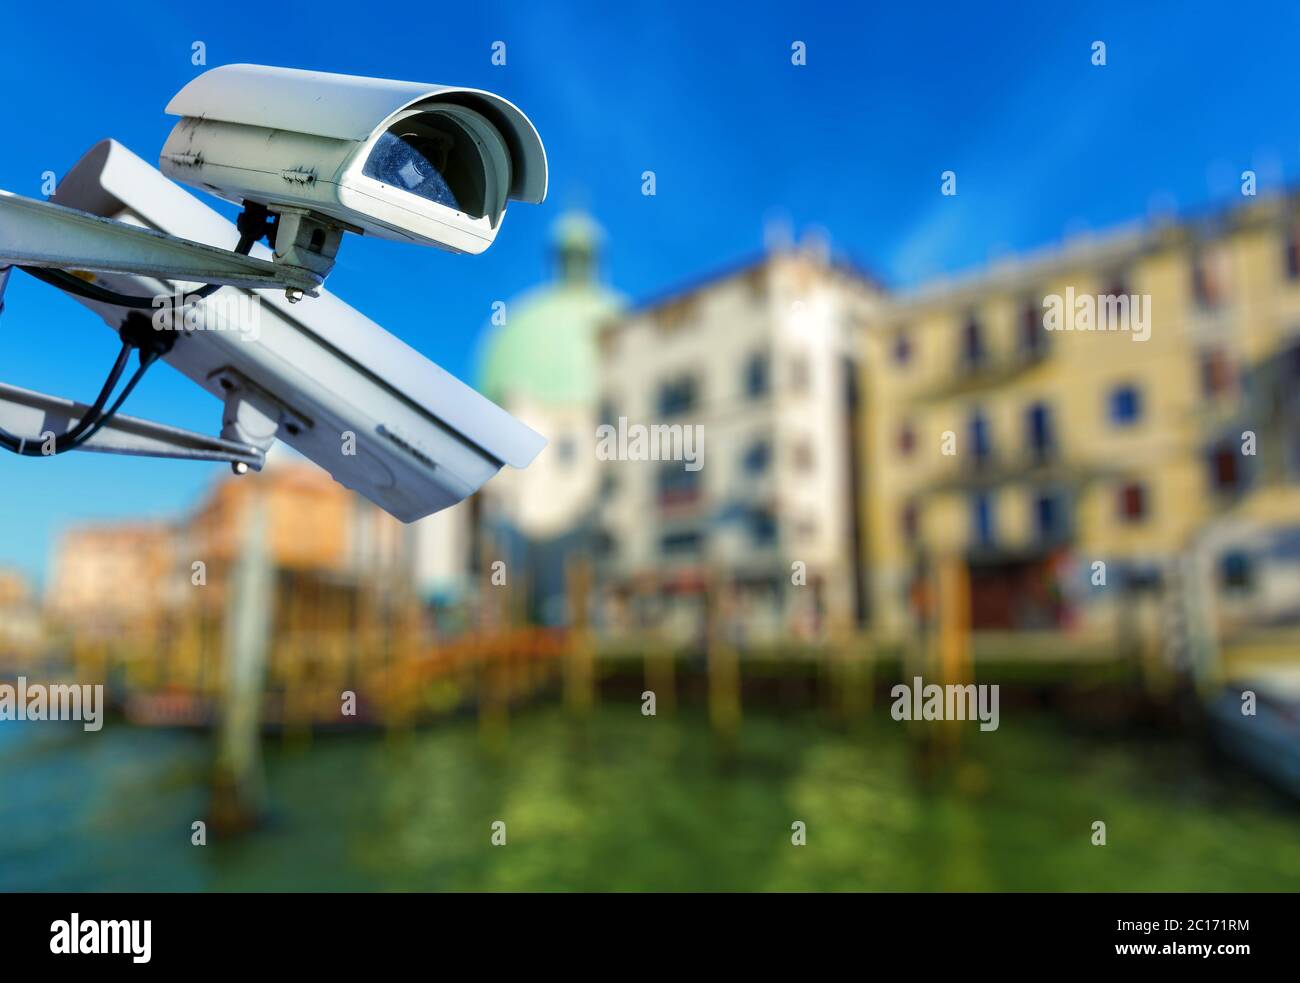 Telecamera di sicurezza con canale grande di venezia su sfondo sfocato Foto Stock